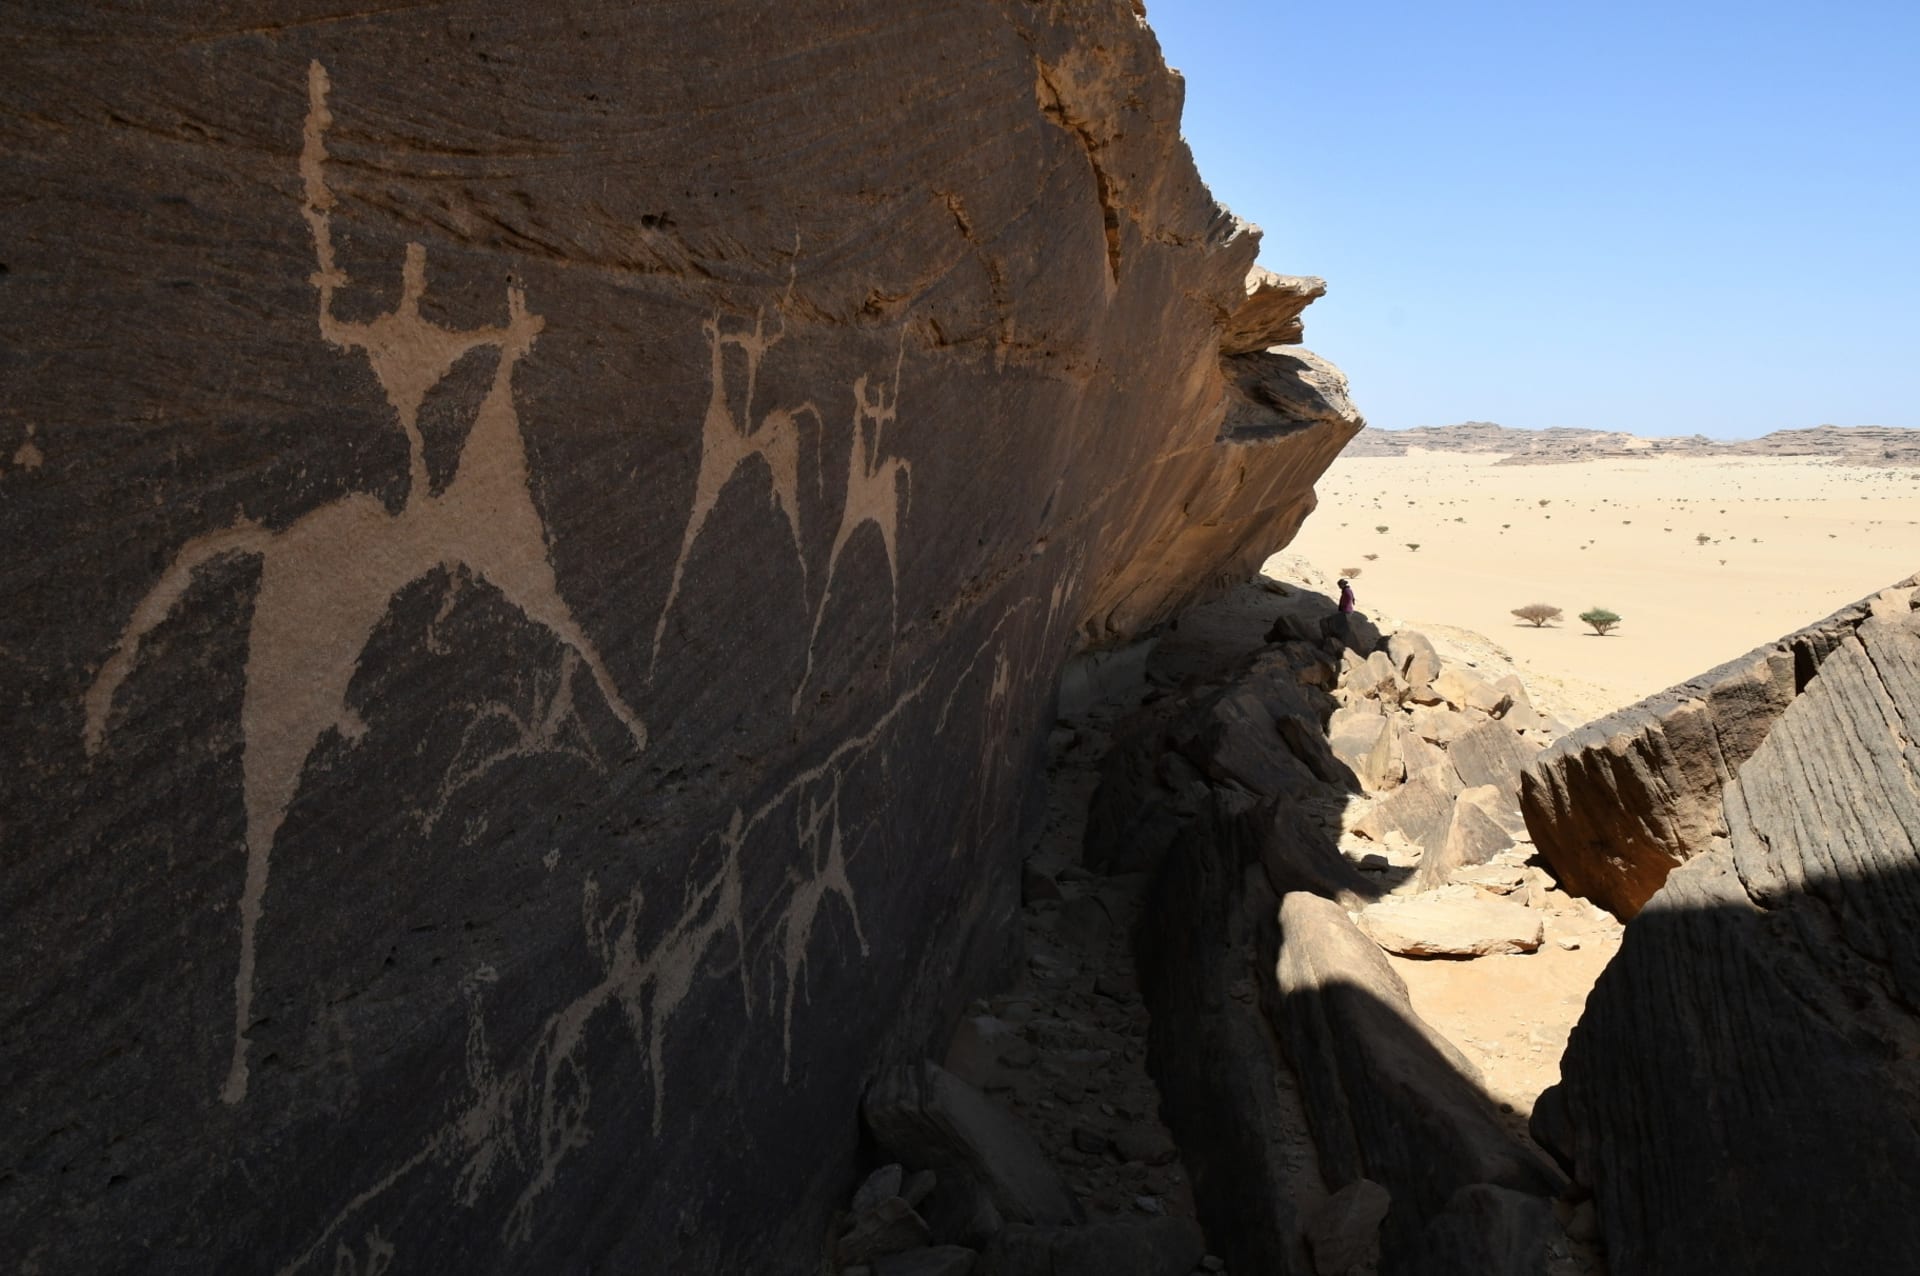 Galerie pravěkých skalních rytin,  tzv. petroglyfy